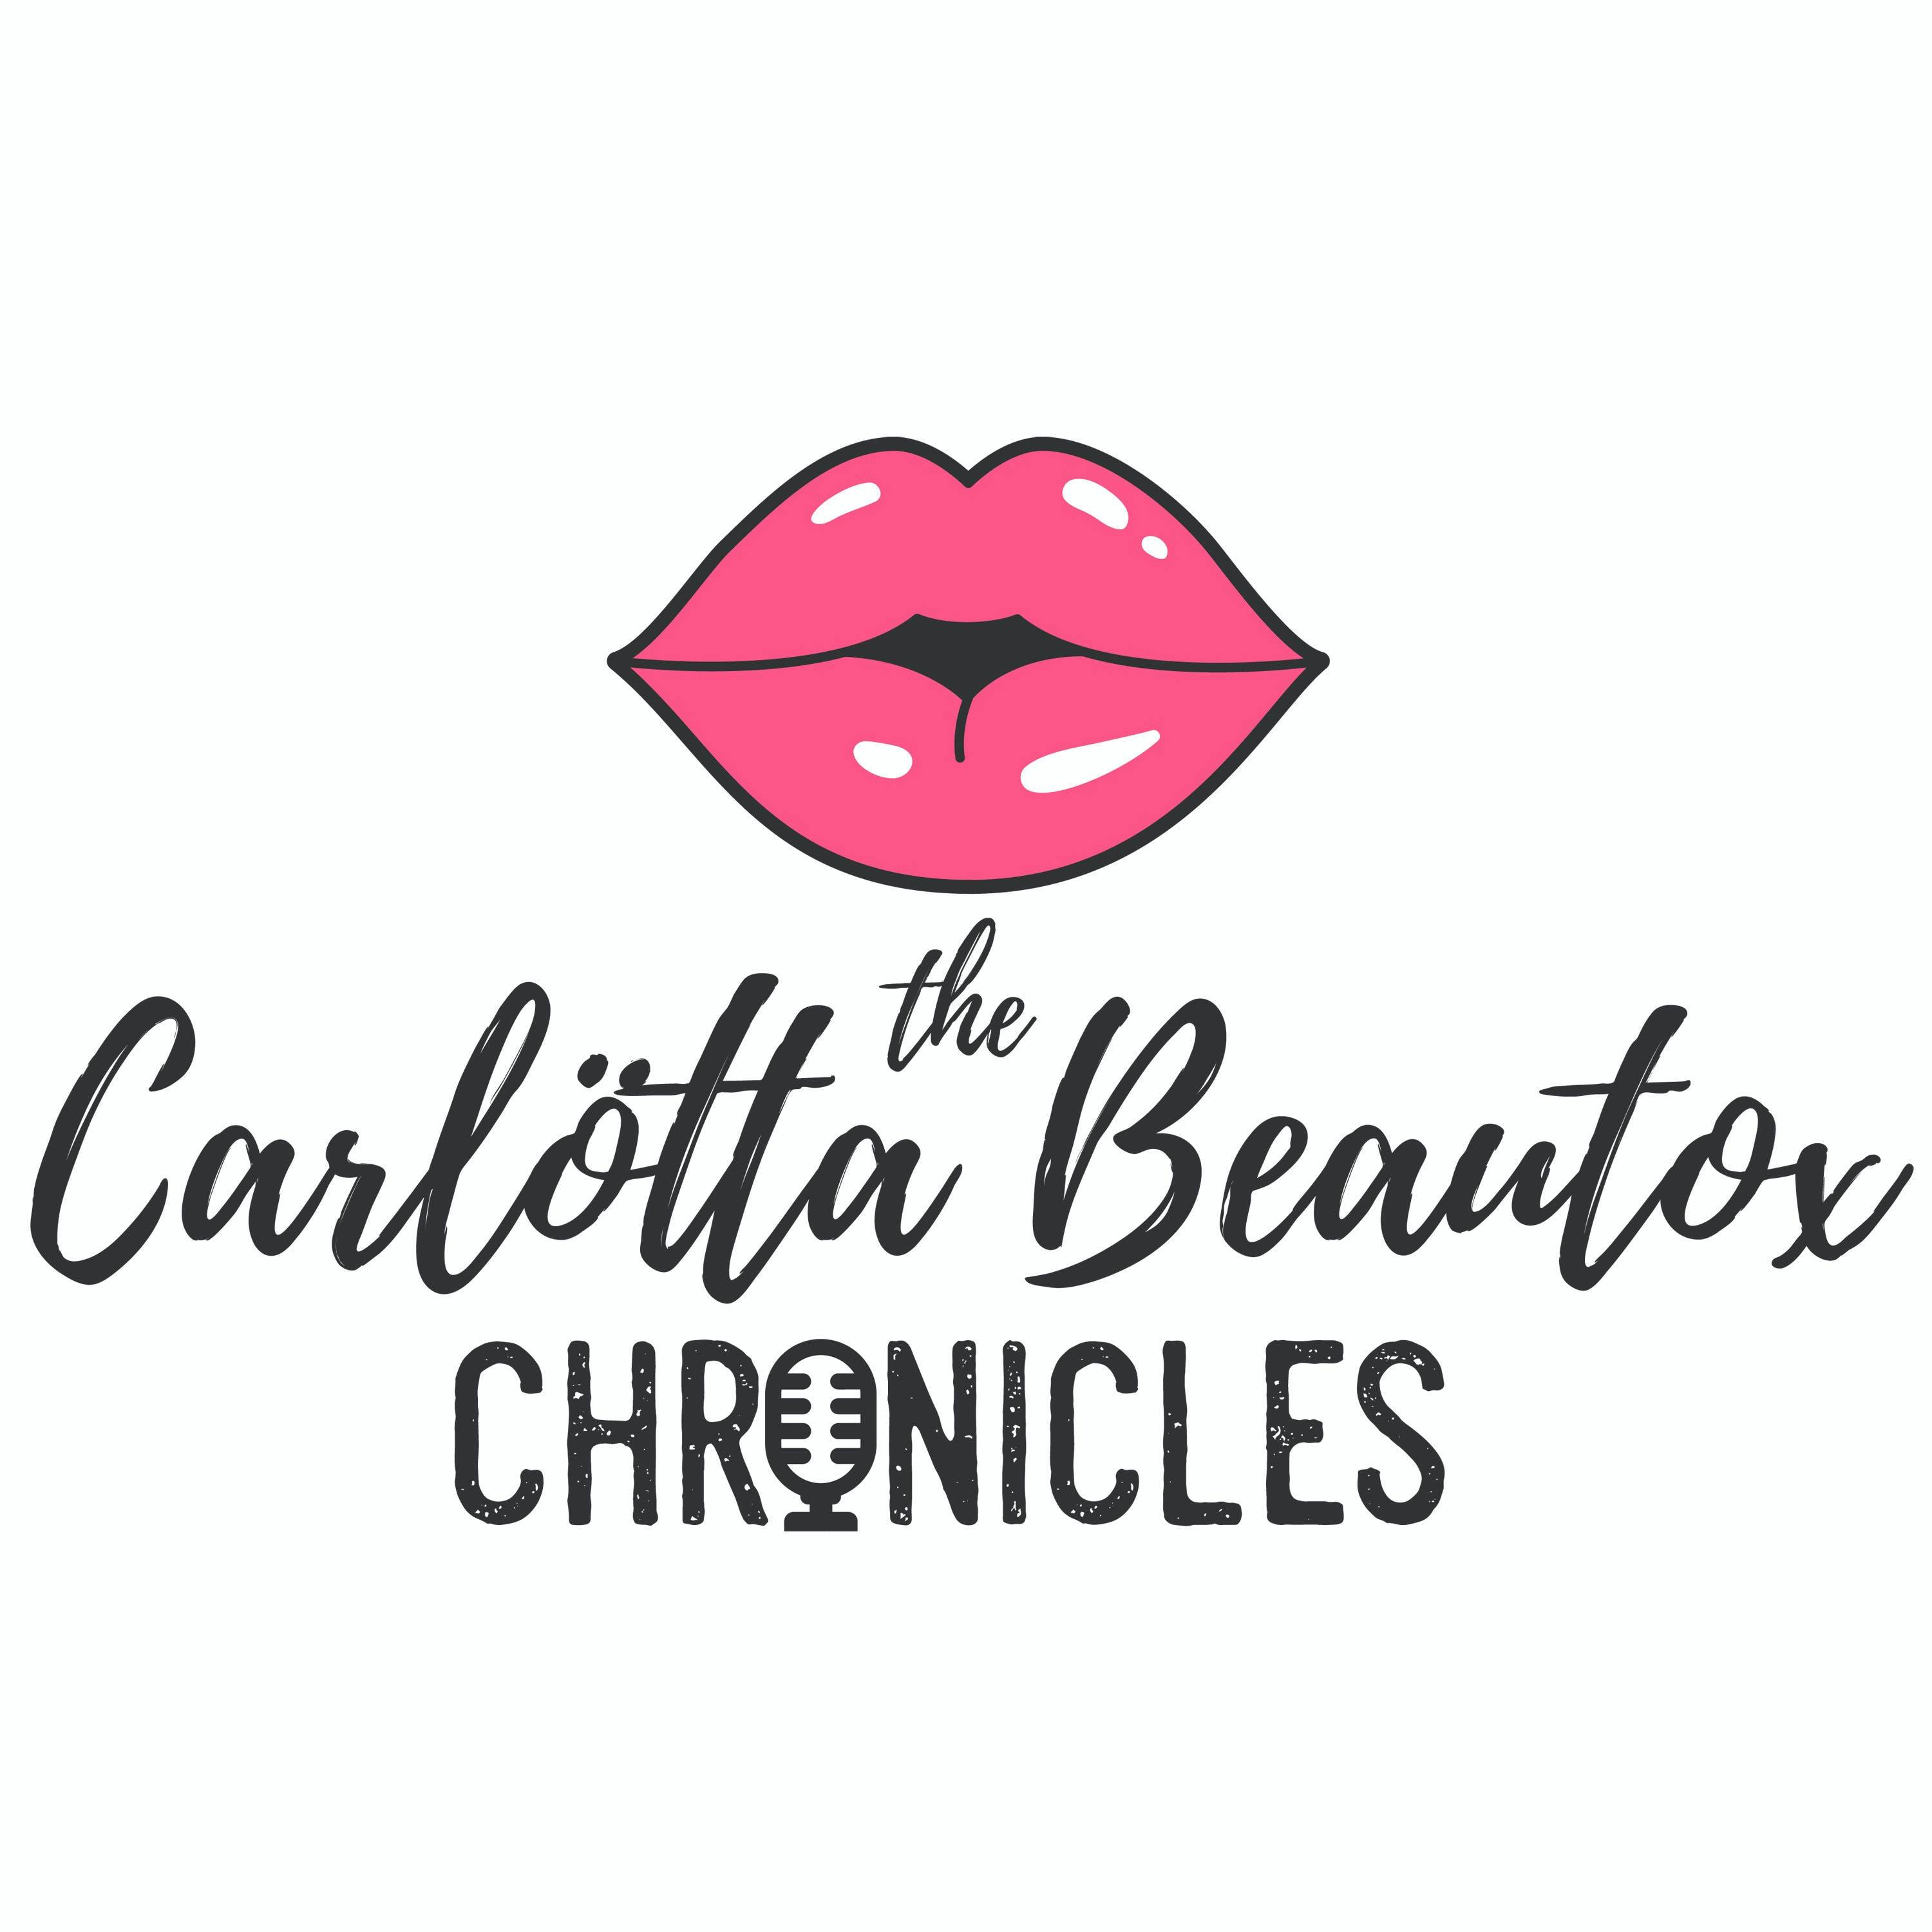 The Carlötta Beautox Chronicles